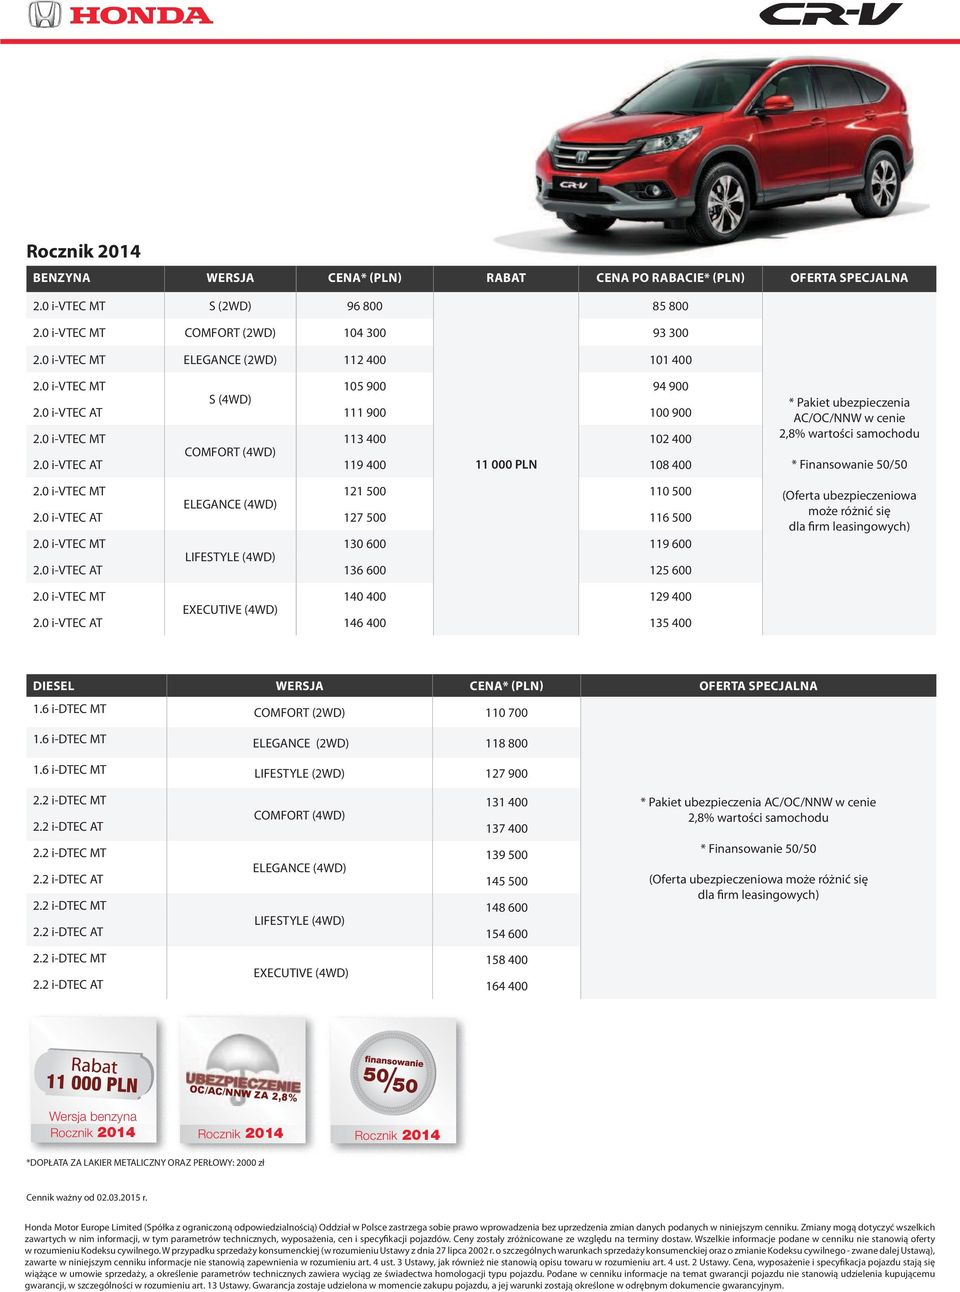 0 i-vtec AT 136 600 125 600 * Pakiet ubezpieczenia AC/OC/NNW w cenie 2,8% wartości samochodu (Oferta ubezpieczeniowa może różnić się dla firm leasingowych) 140 400 129 400 EXECUTIVE (4WD) 2.